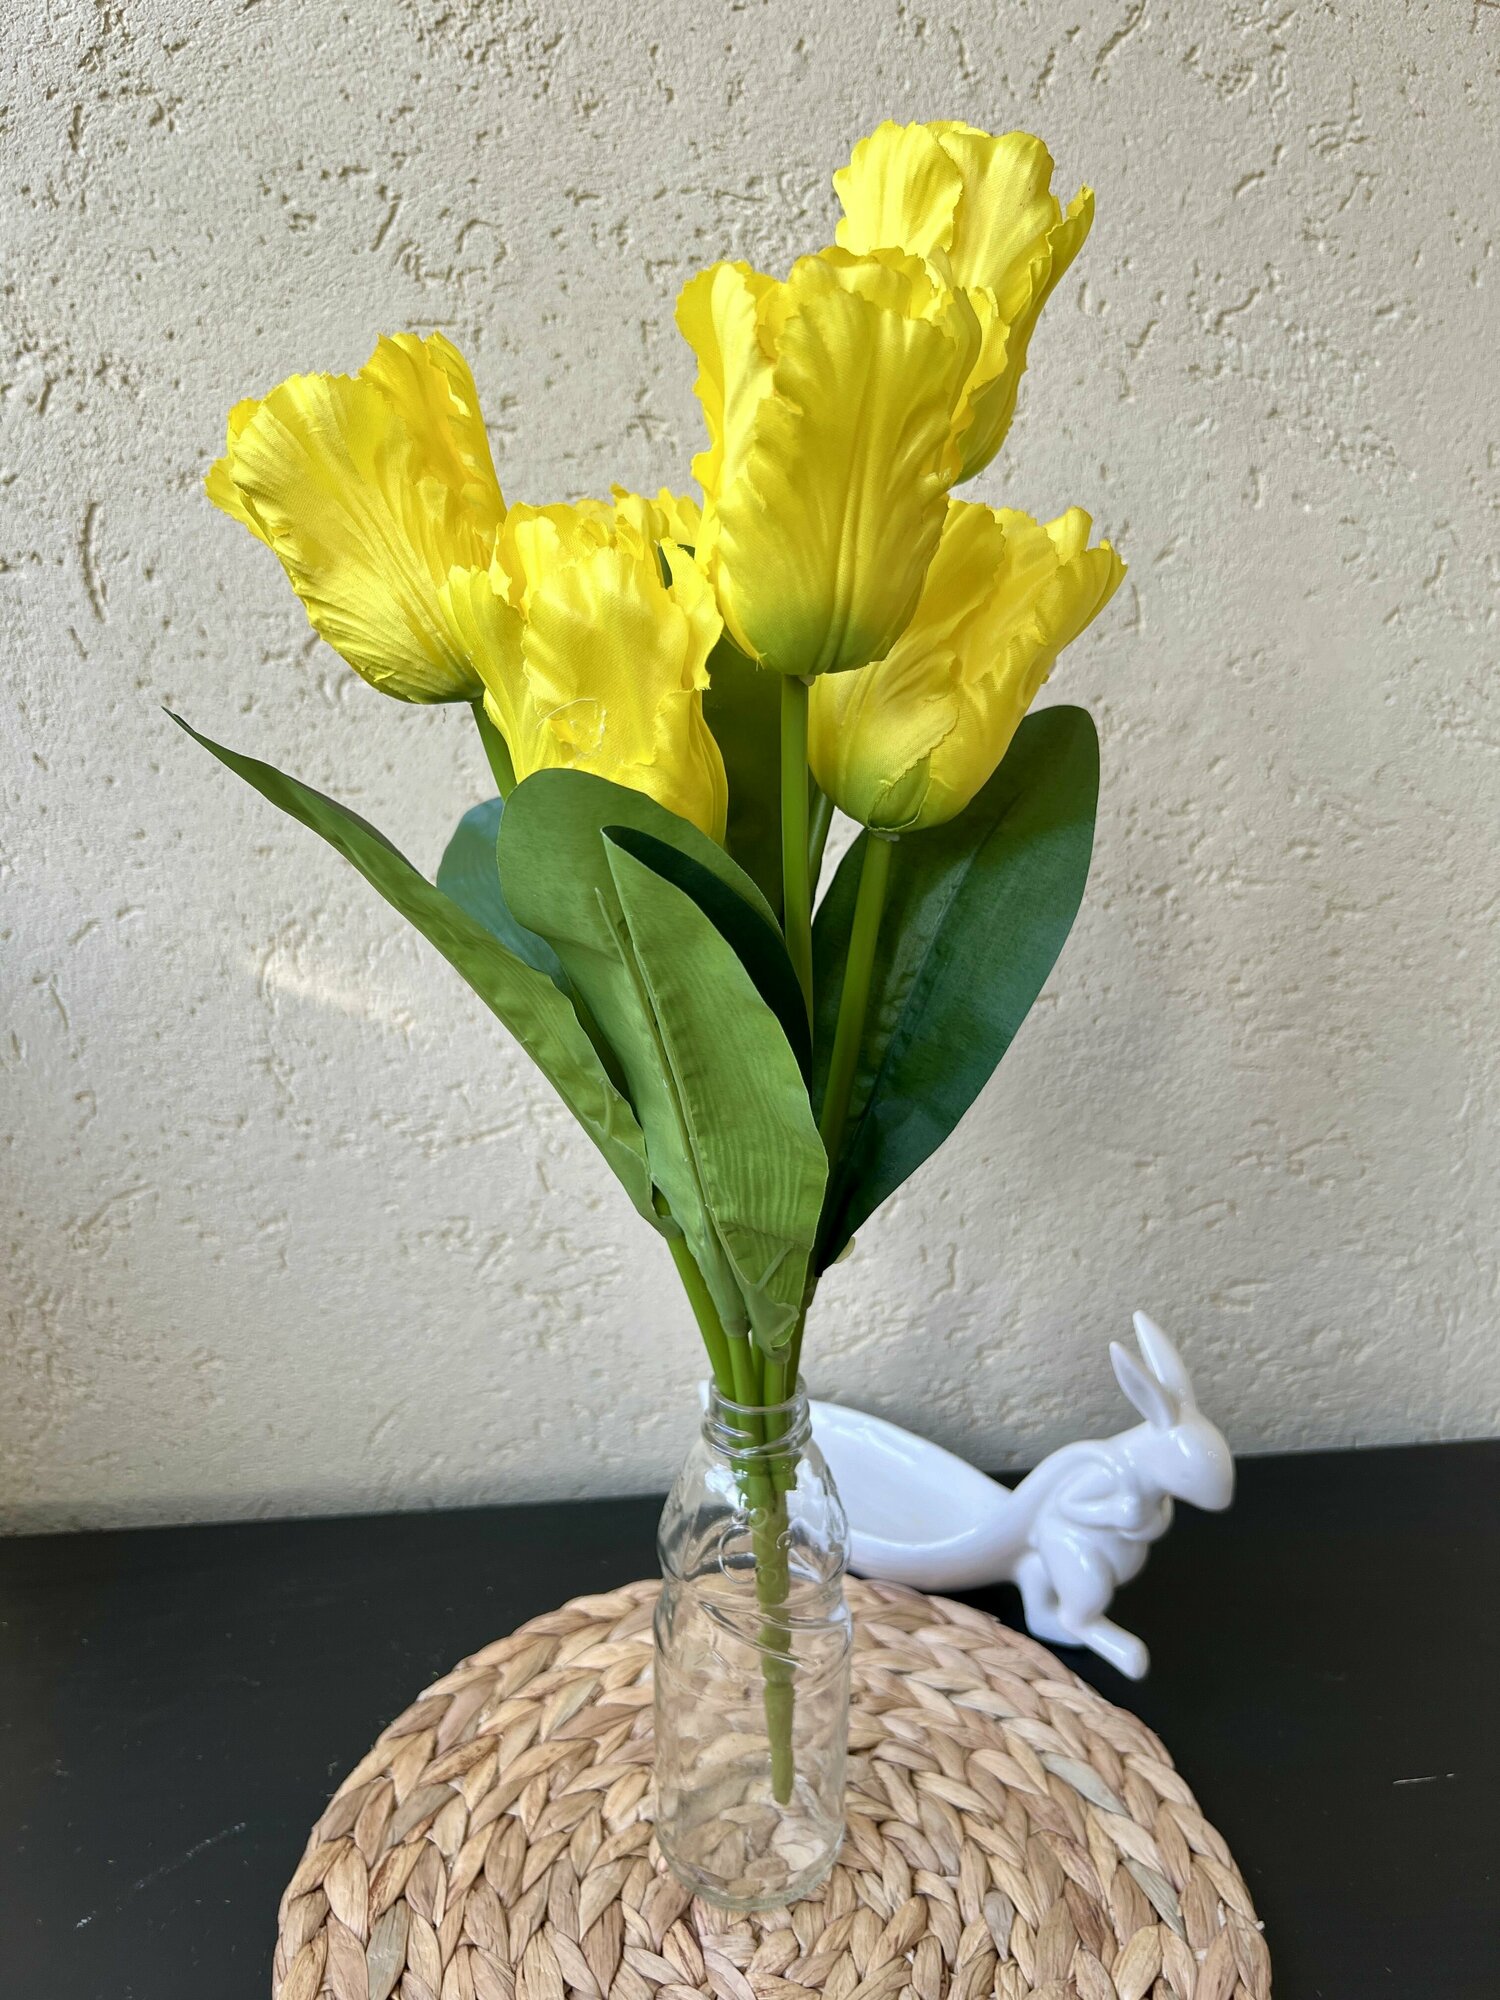 Искусственные цветы Тюльпан Бахромчатый для декора